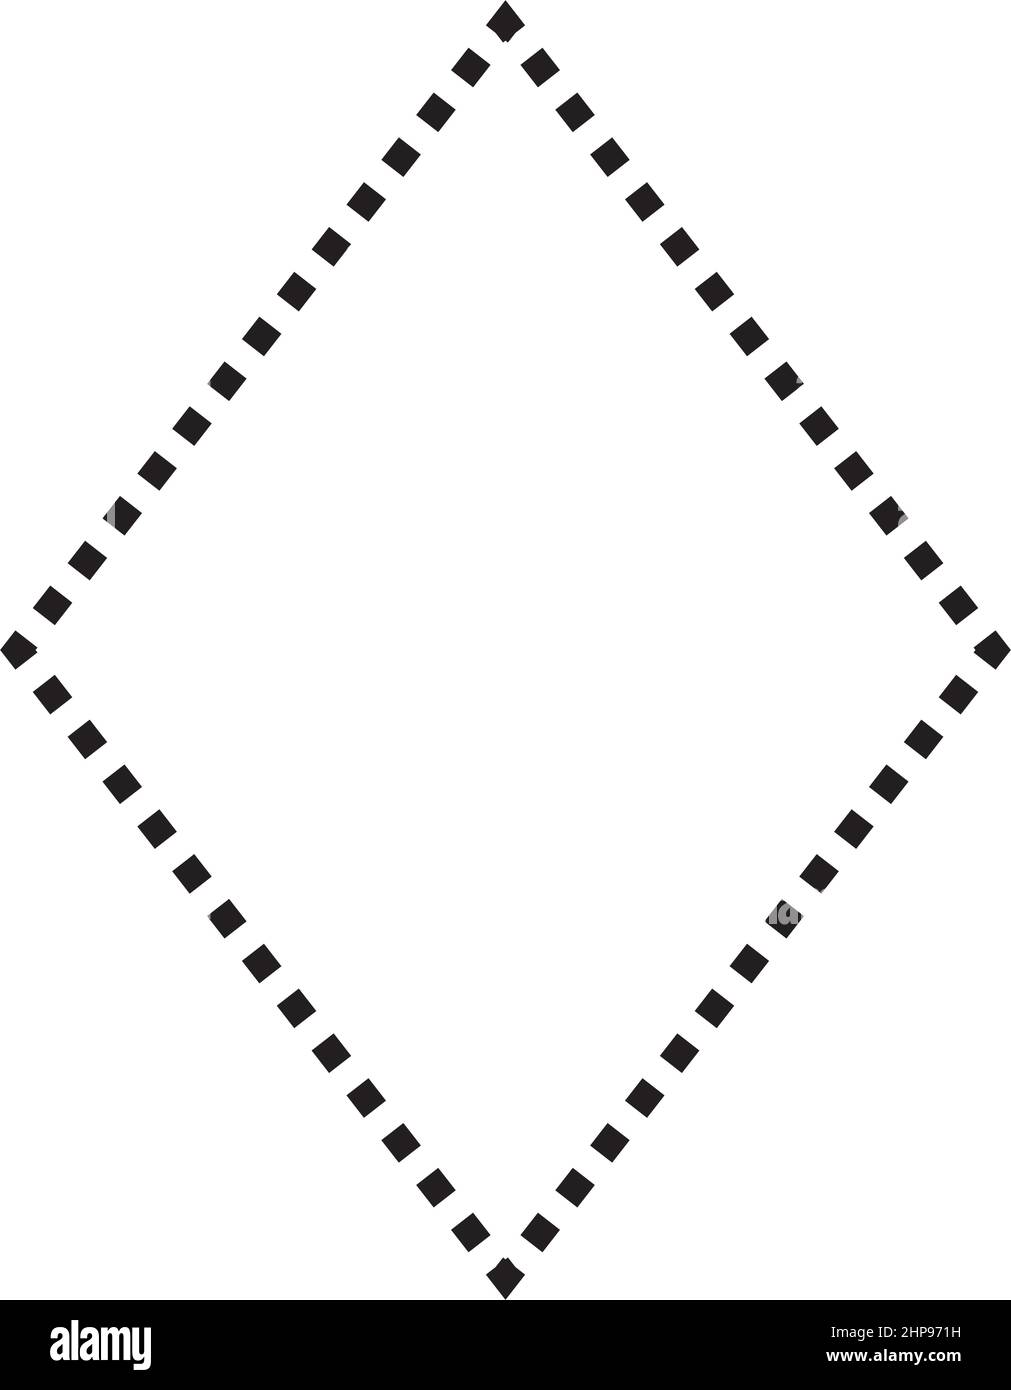 Rhombus-Form gestricheltes Symbol Vektor-Symbol für kreatives Grafikdesign ui-Element in einer Piktogrammdarstellung Stock Vektor